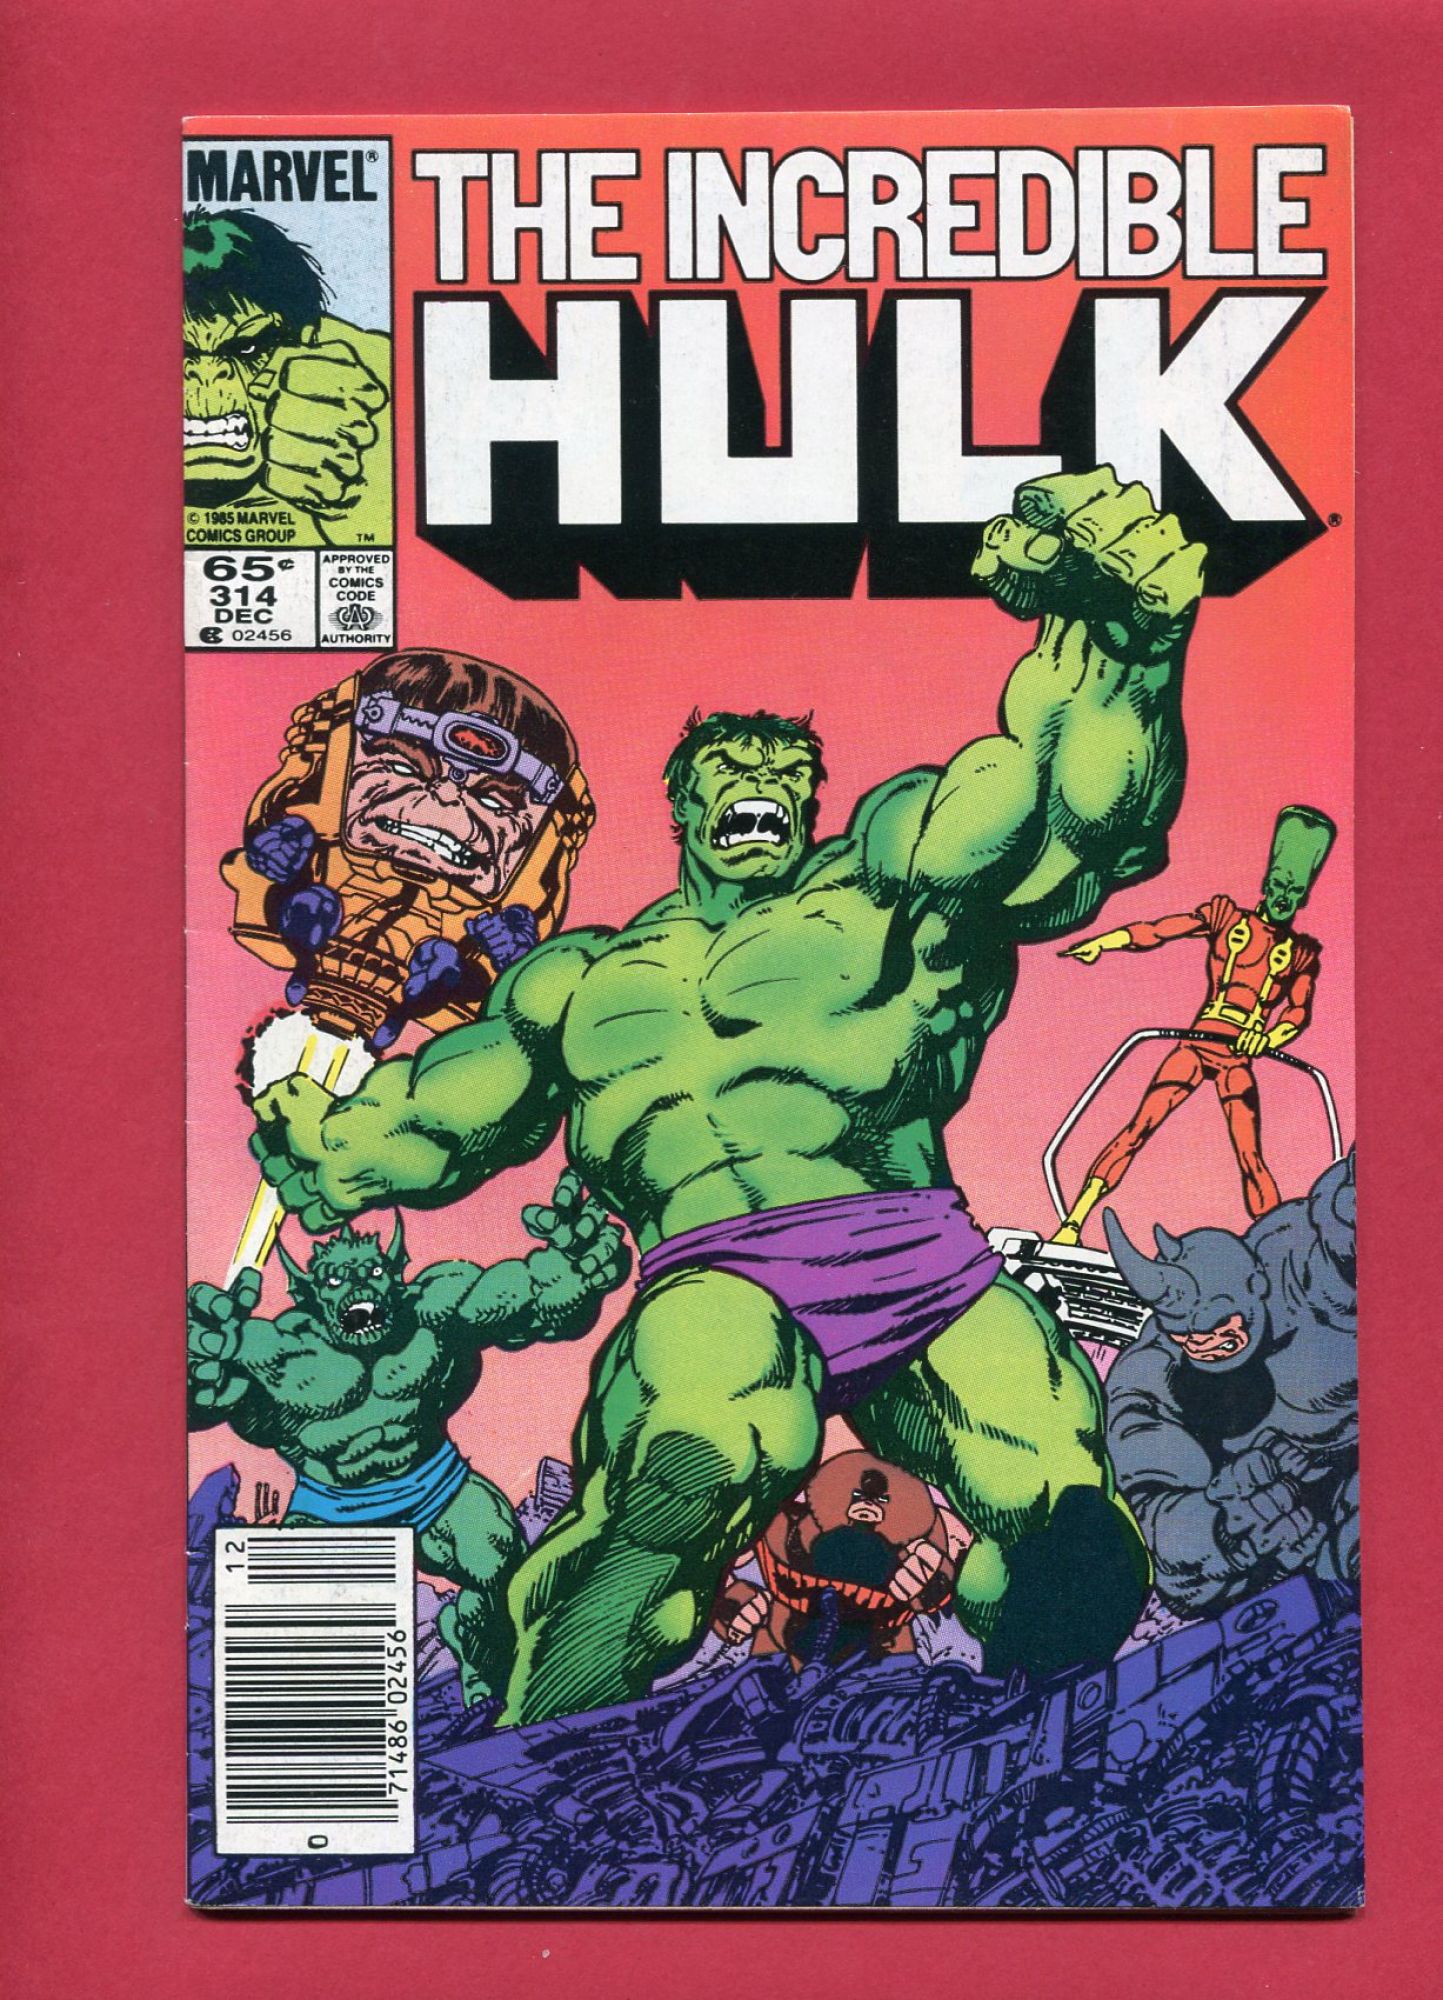 Incredible Hulk #314, Dec 1985, 8.0 VF